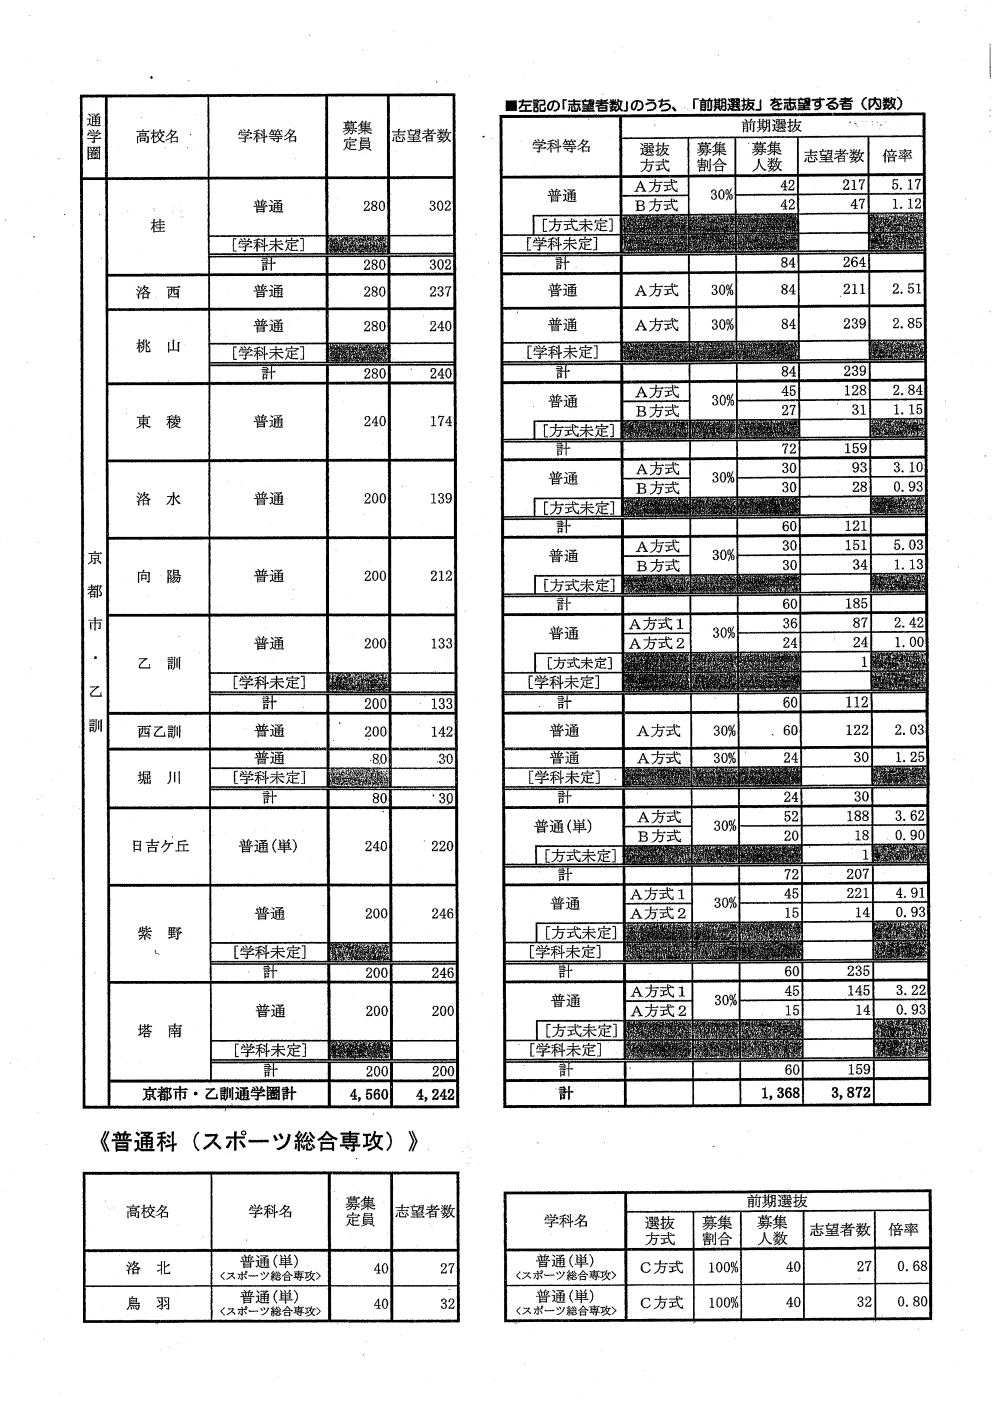 京都 公立 高校 倍率 2021